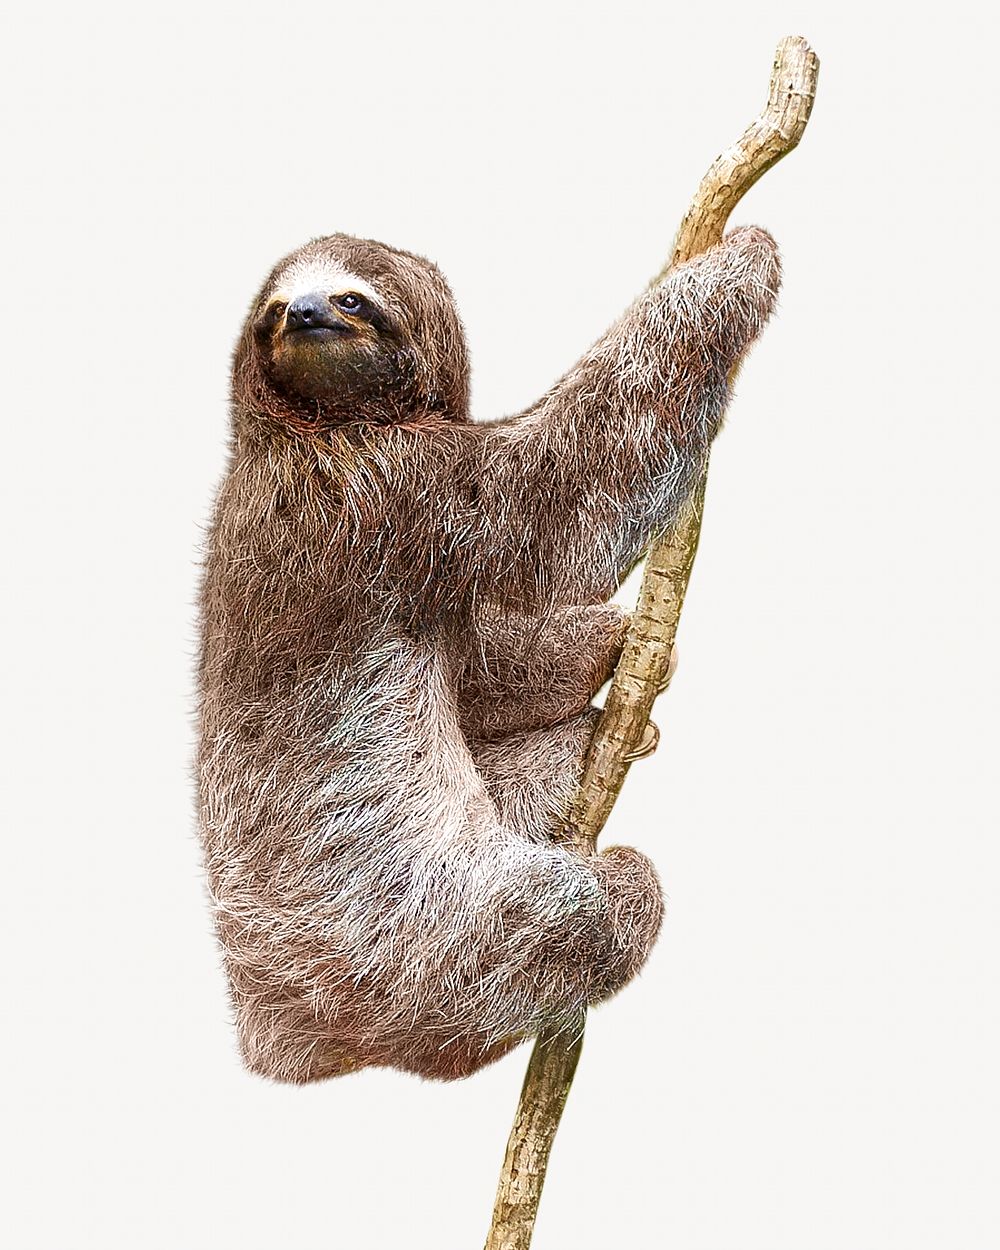 Sloth isolated image on white